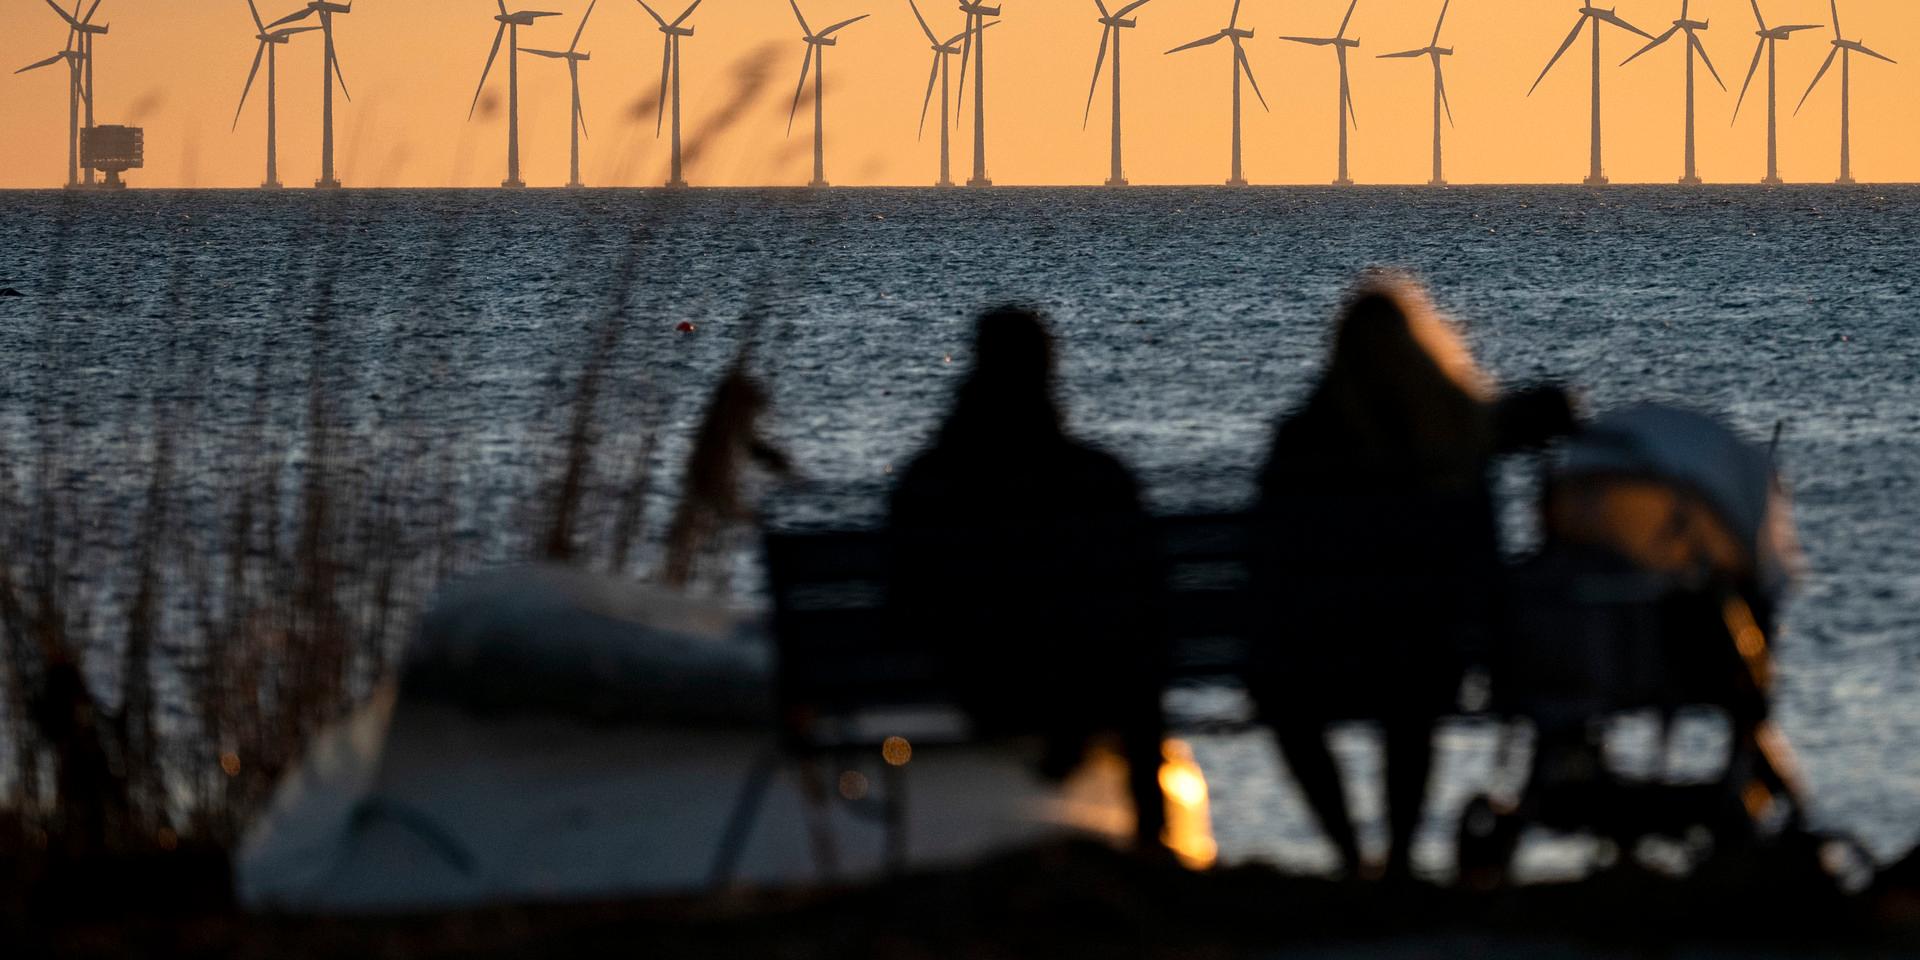  För oss som ofta njuter av vackra solnedgångar i havet och för all del också andra vackra väderfenomen kommer kraftverken för överskådlig framtid påverka upplevelsen negativt, skriver debattören. Bilden är från Lillgrund, söder om Öresundsbron.